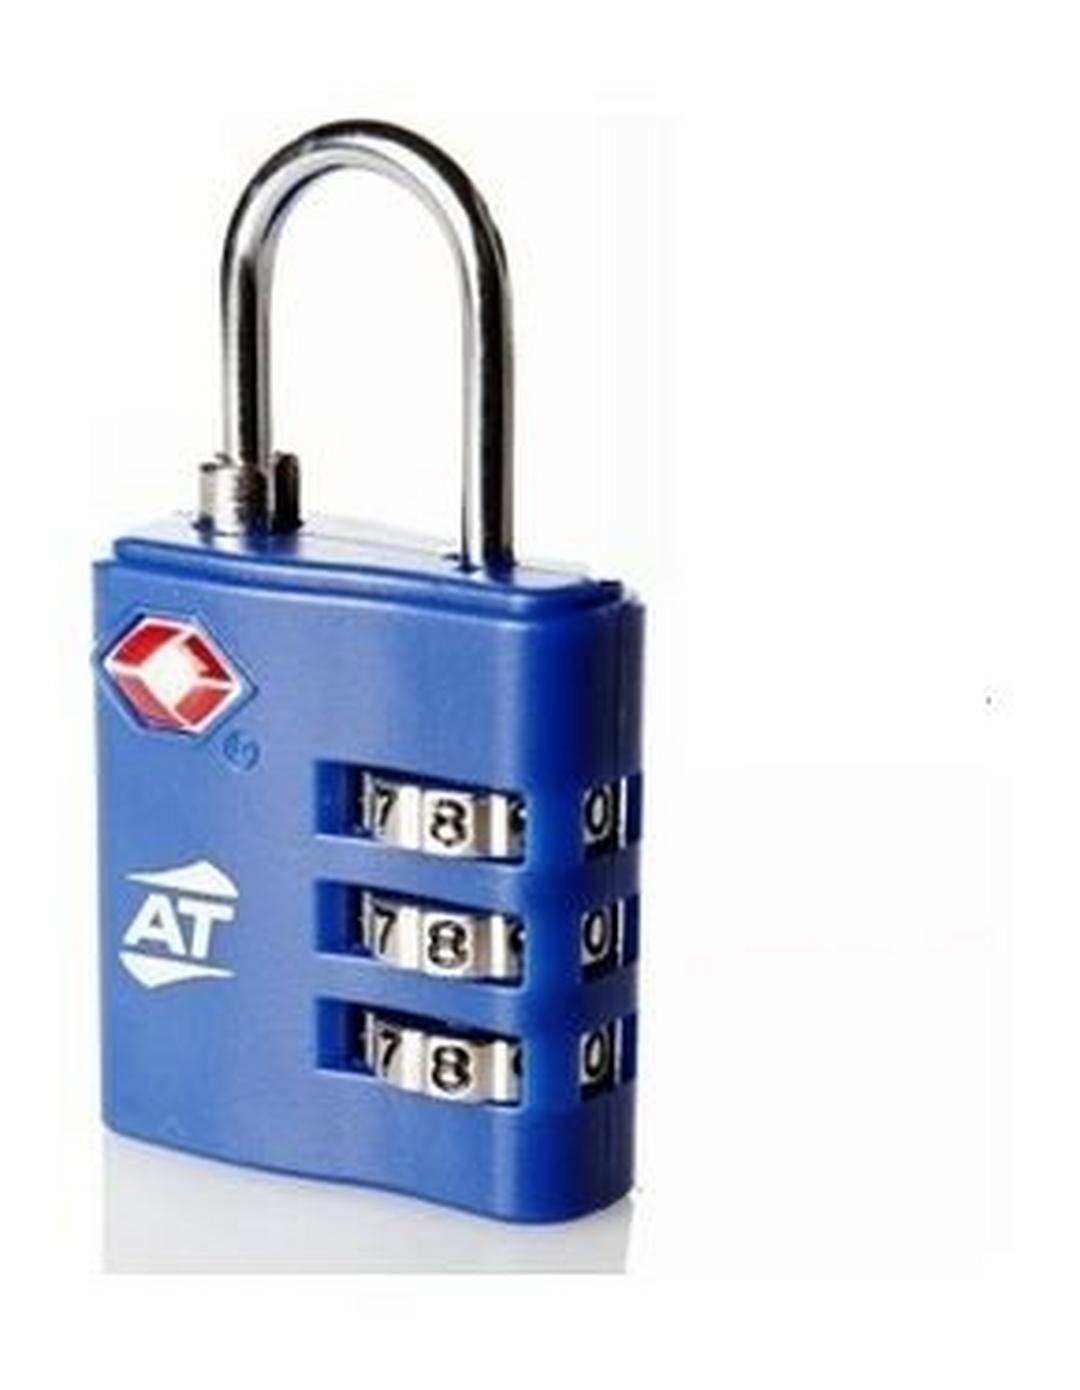 قفل حقيبة رقمي تي إس إيه من أميريكان توريستر - أزرق